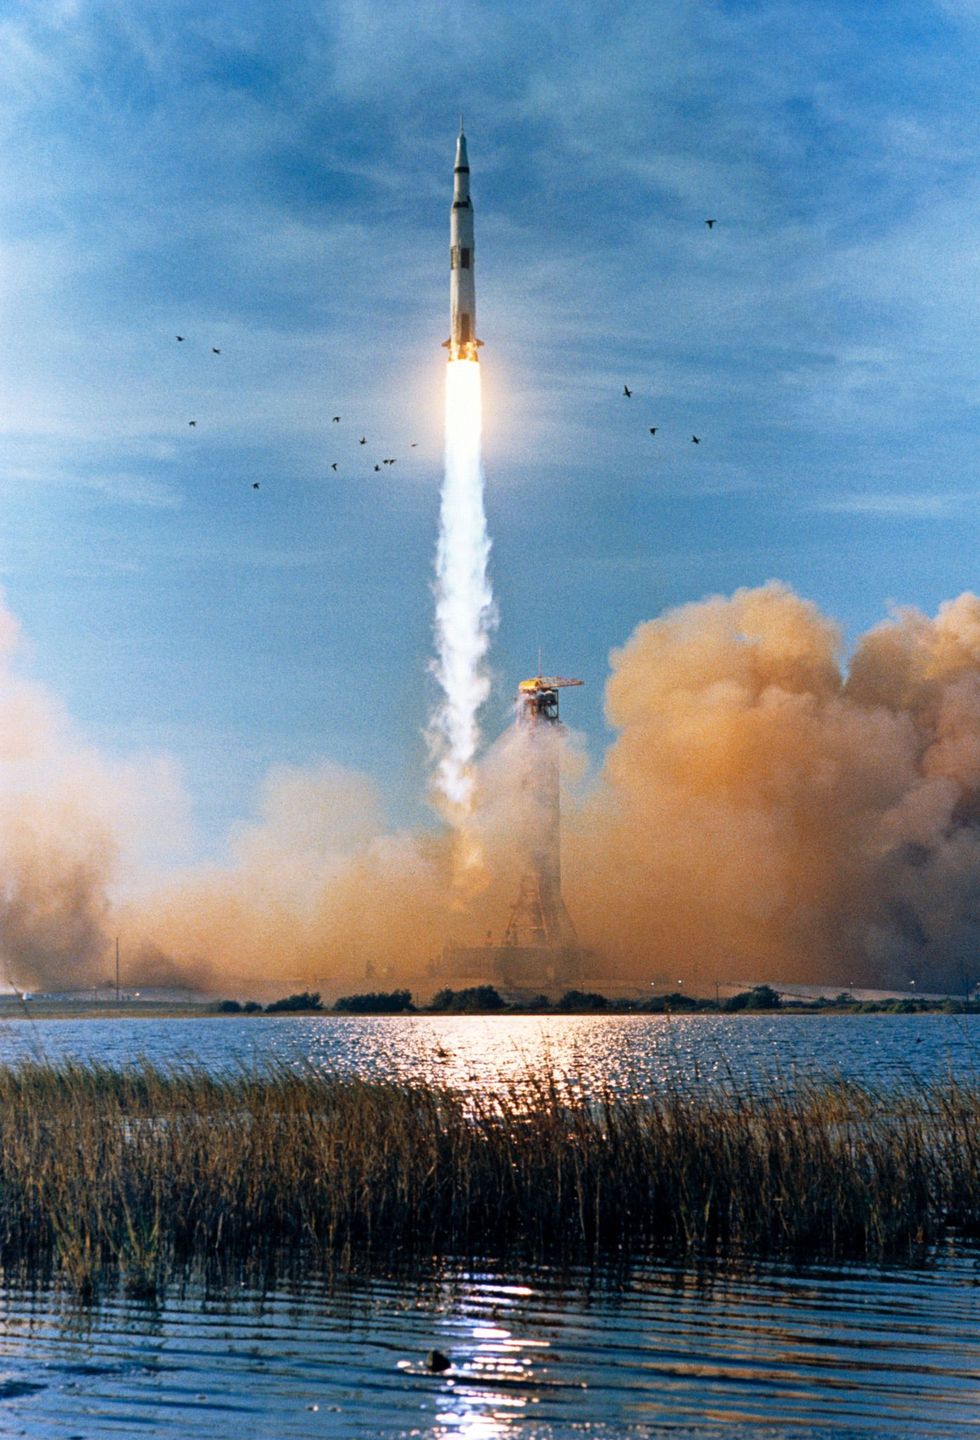 Op 21 december 1968 stijgt een Saturn Vraket met een stuwkracht van 34000 kilonewton op van het Kennedy Space Centre Aan boord is de bemanning van de Apollo 8missie